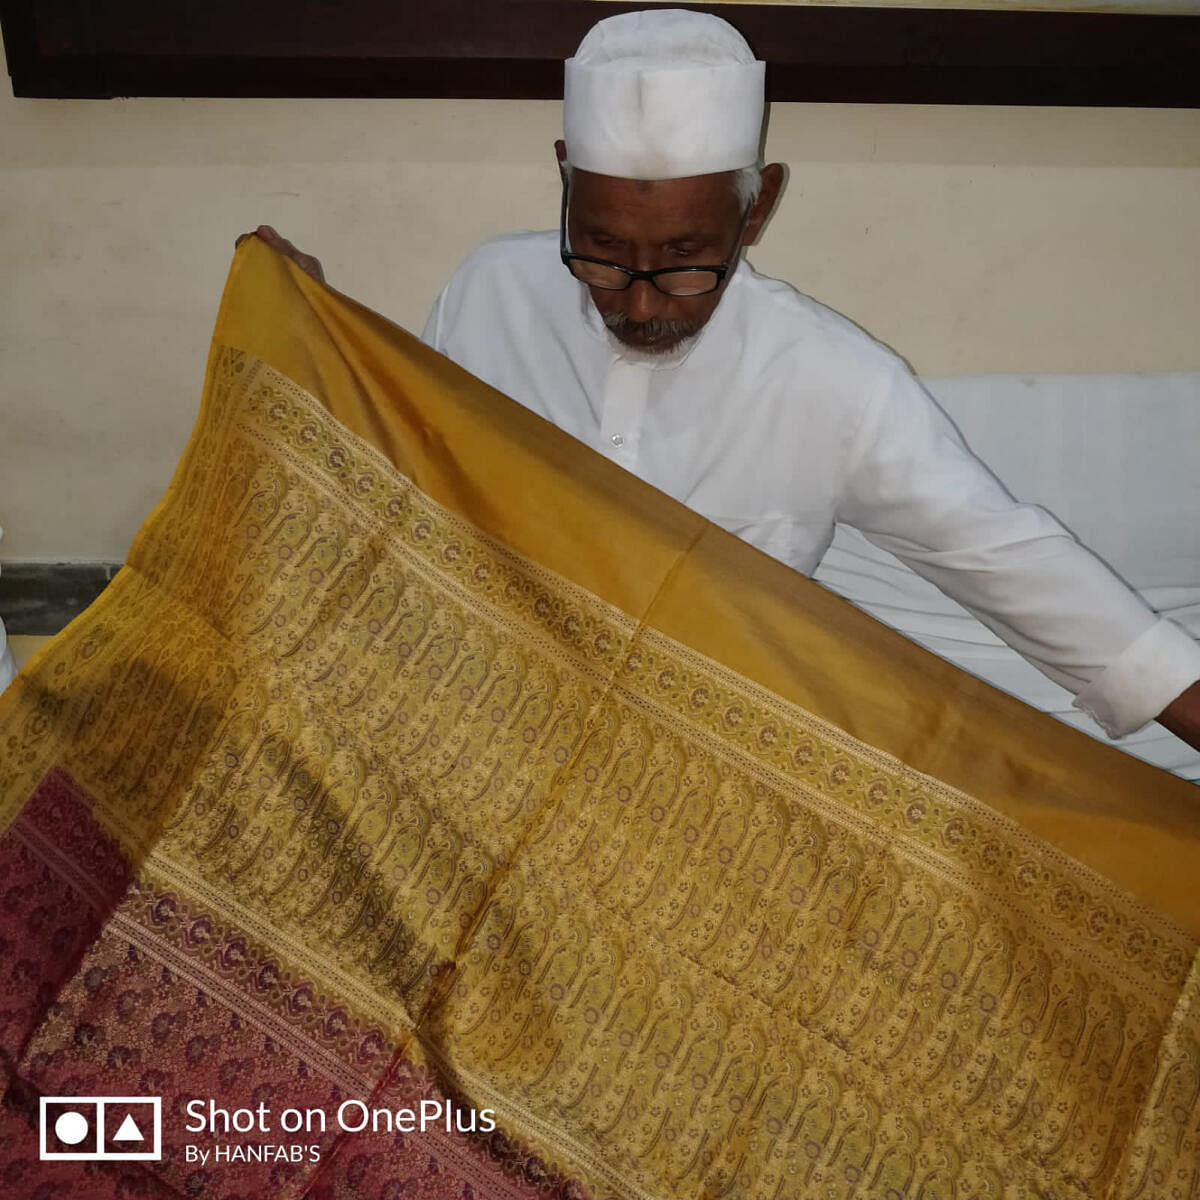 A weaver who works with Zillur Rahman displays a golden Banarasi sari. The sari took 48 days to complete.